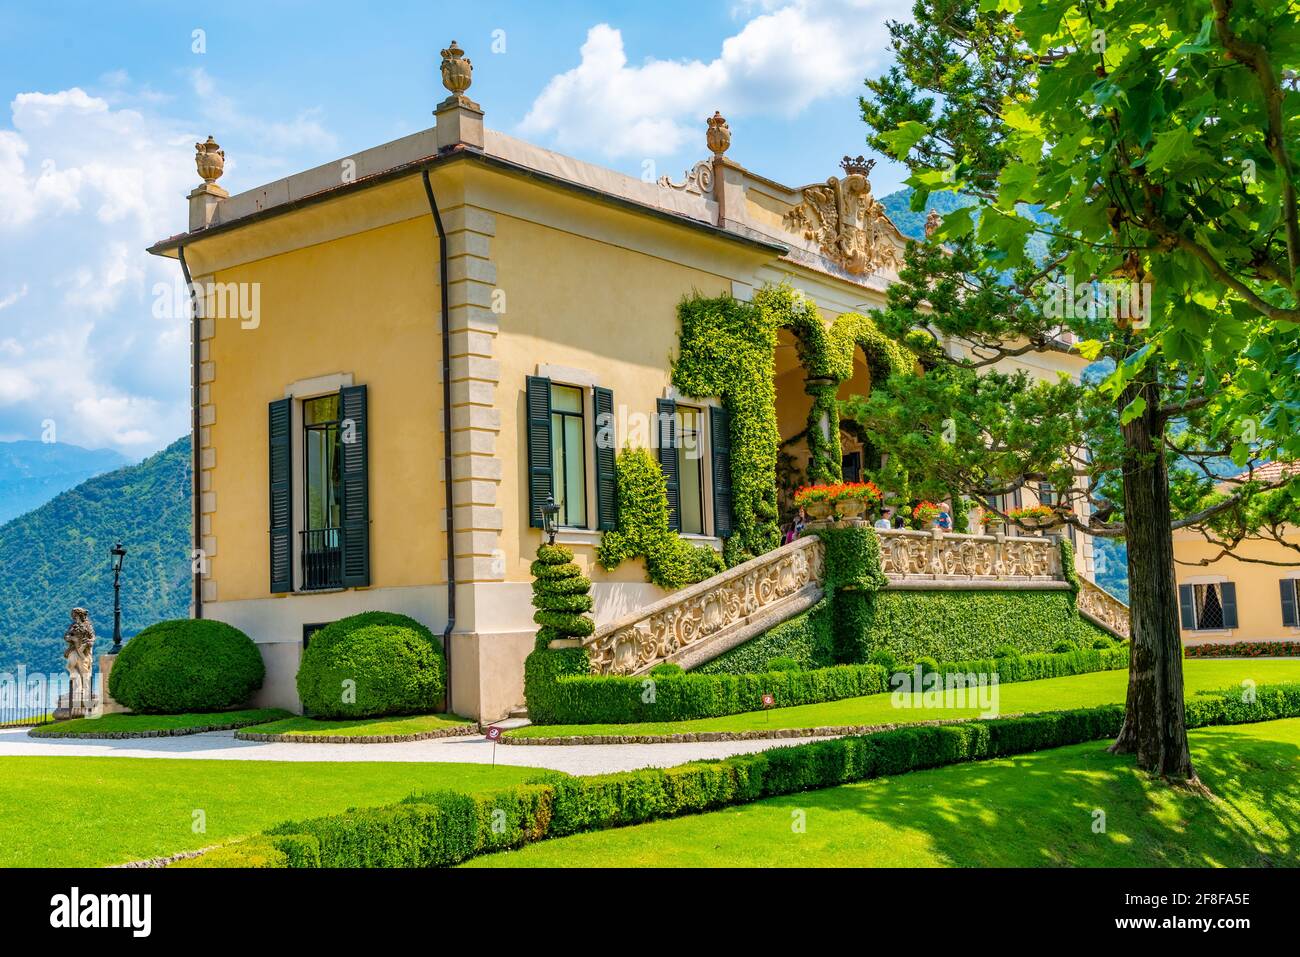 Villa del Balbianello at lake Como in Italy Stock Photo